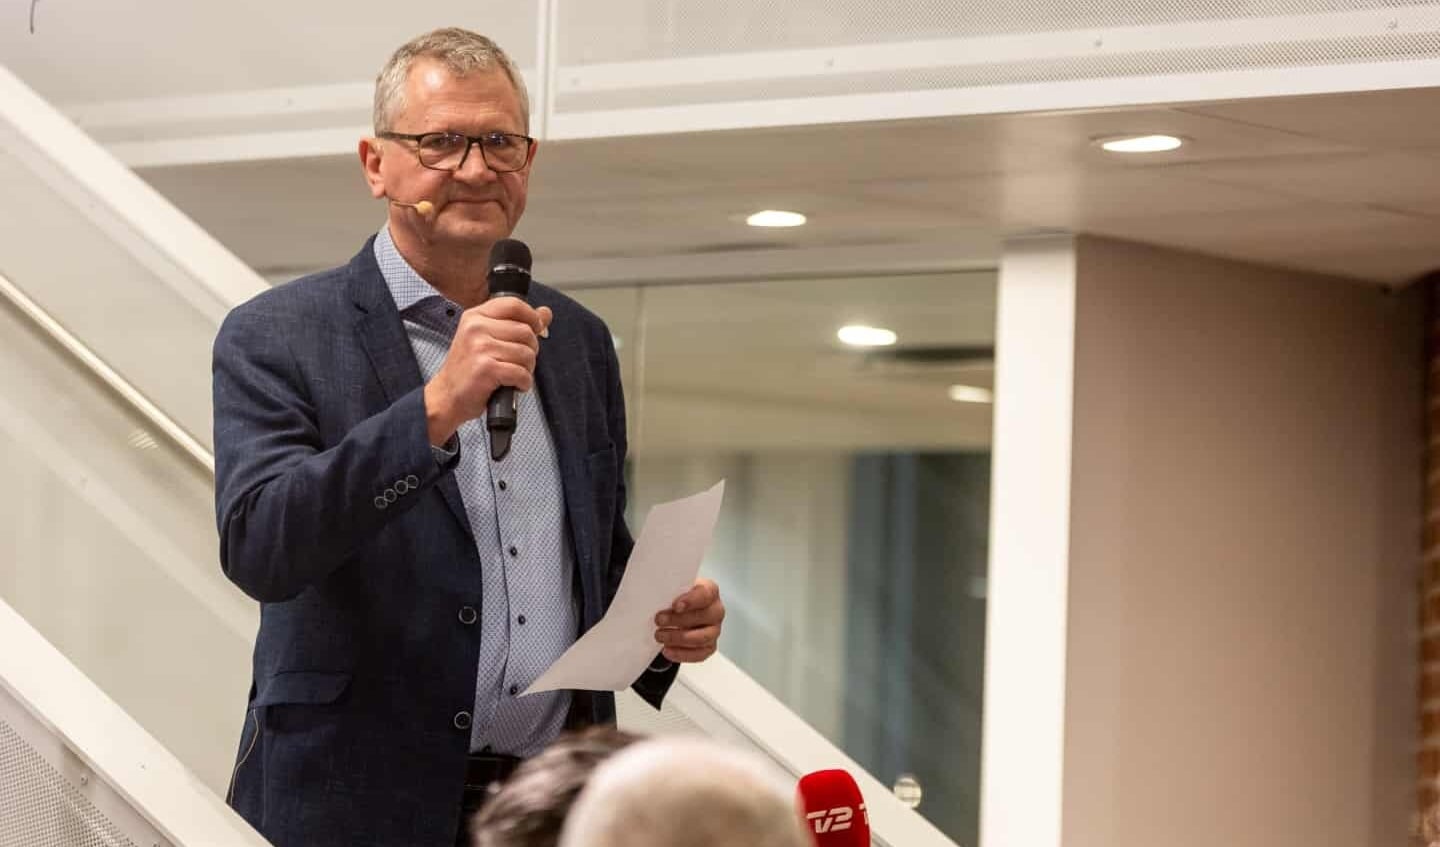 Henrik Frandsen fra Tønder Listen blev valgets helt store vinder. I alt blev det til 9 mandater til det kun lidt over et år gamle parti. Nu forhandler partierne på rådhuset i Tønder. Foto: 

